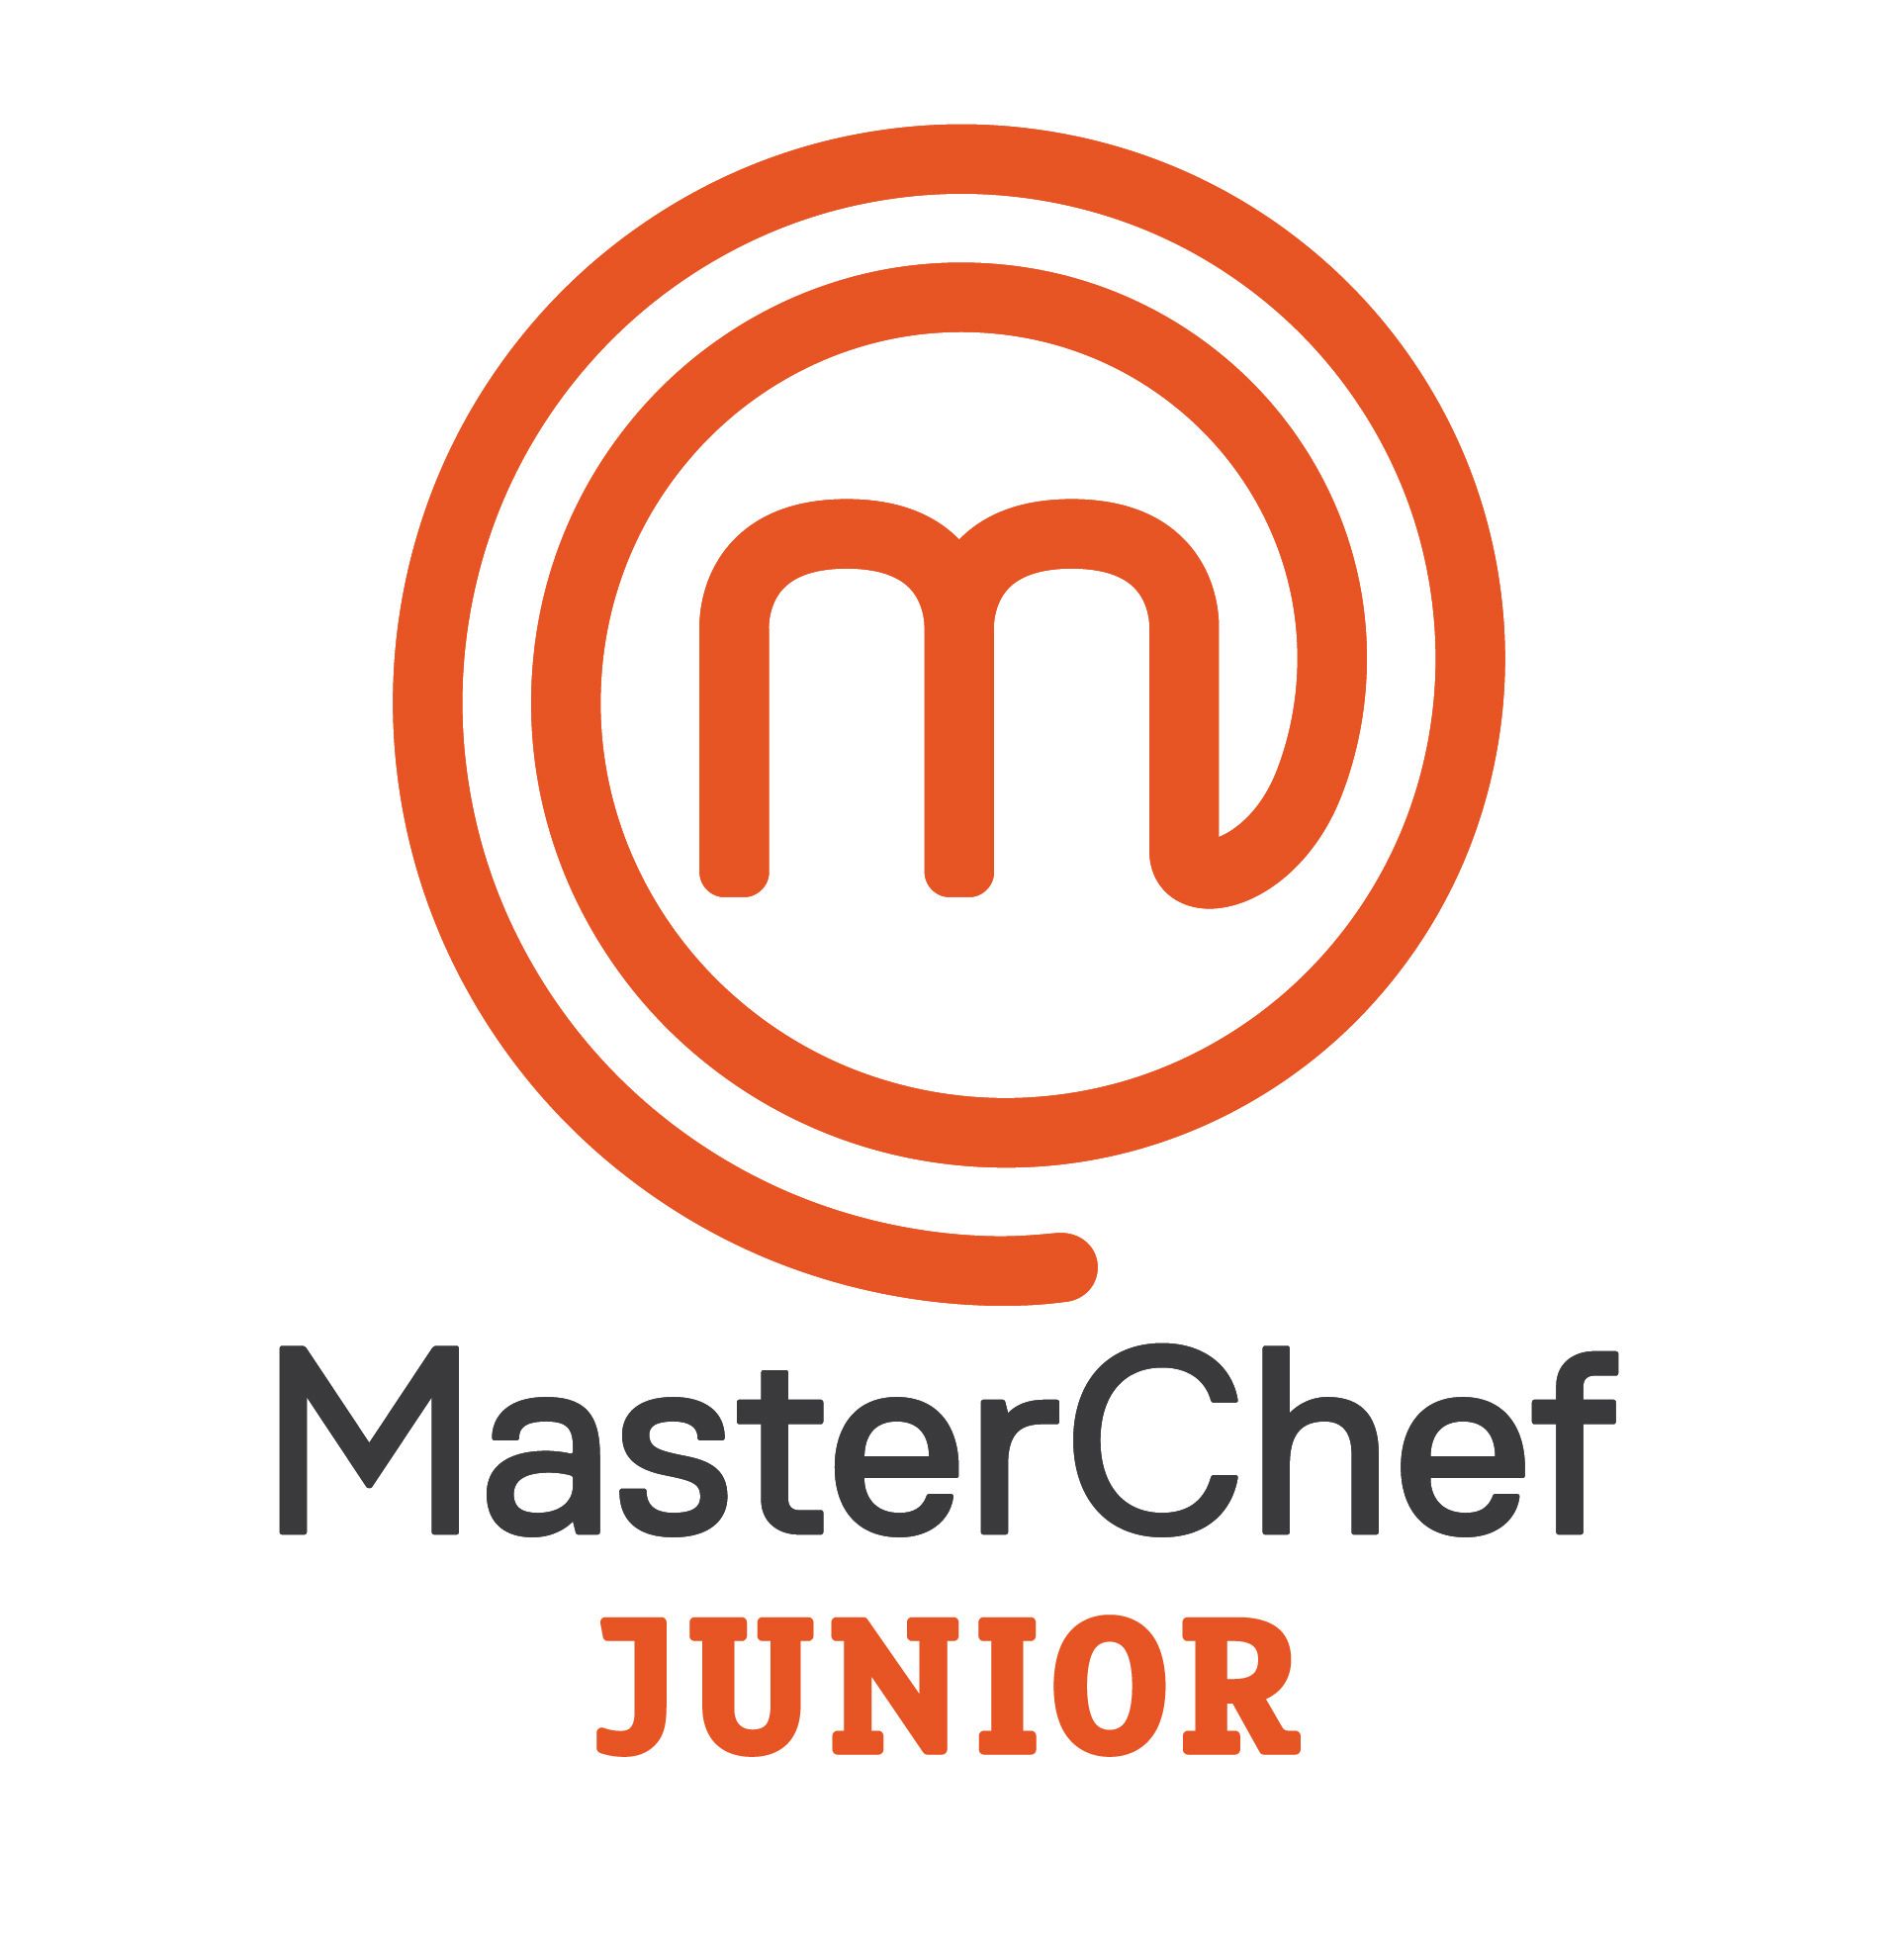 Είναι επίσημο! Έρχεται το Master Chef Junior